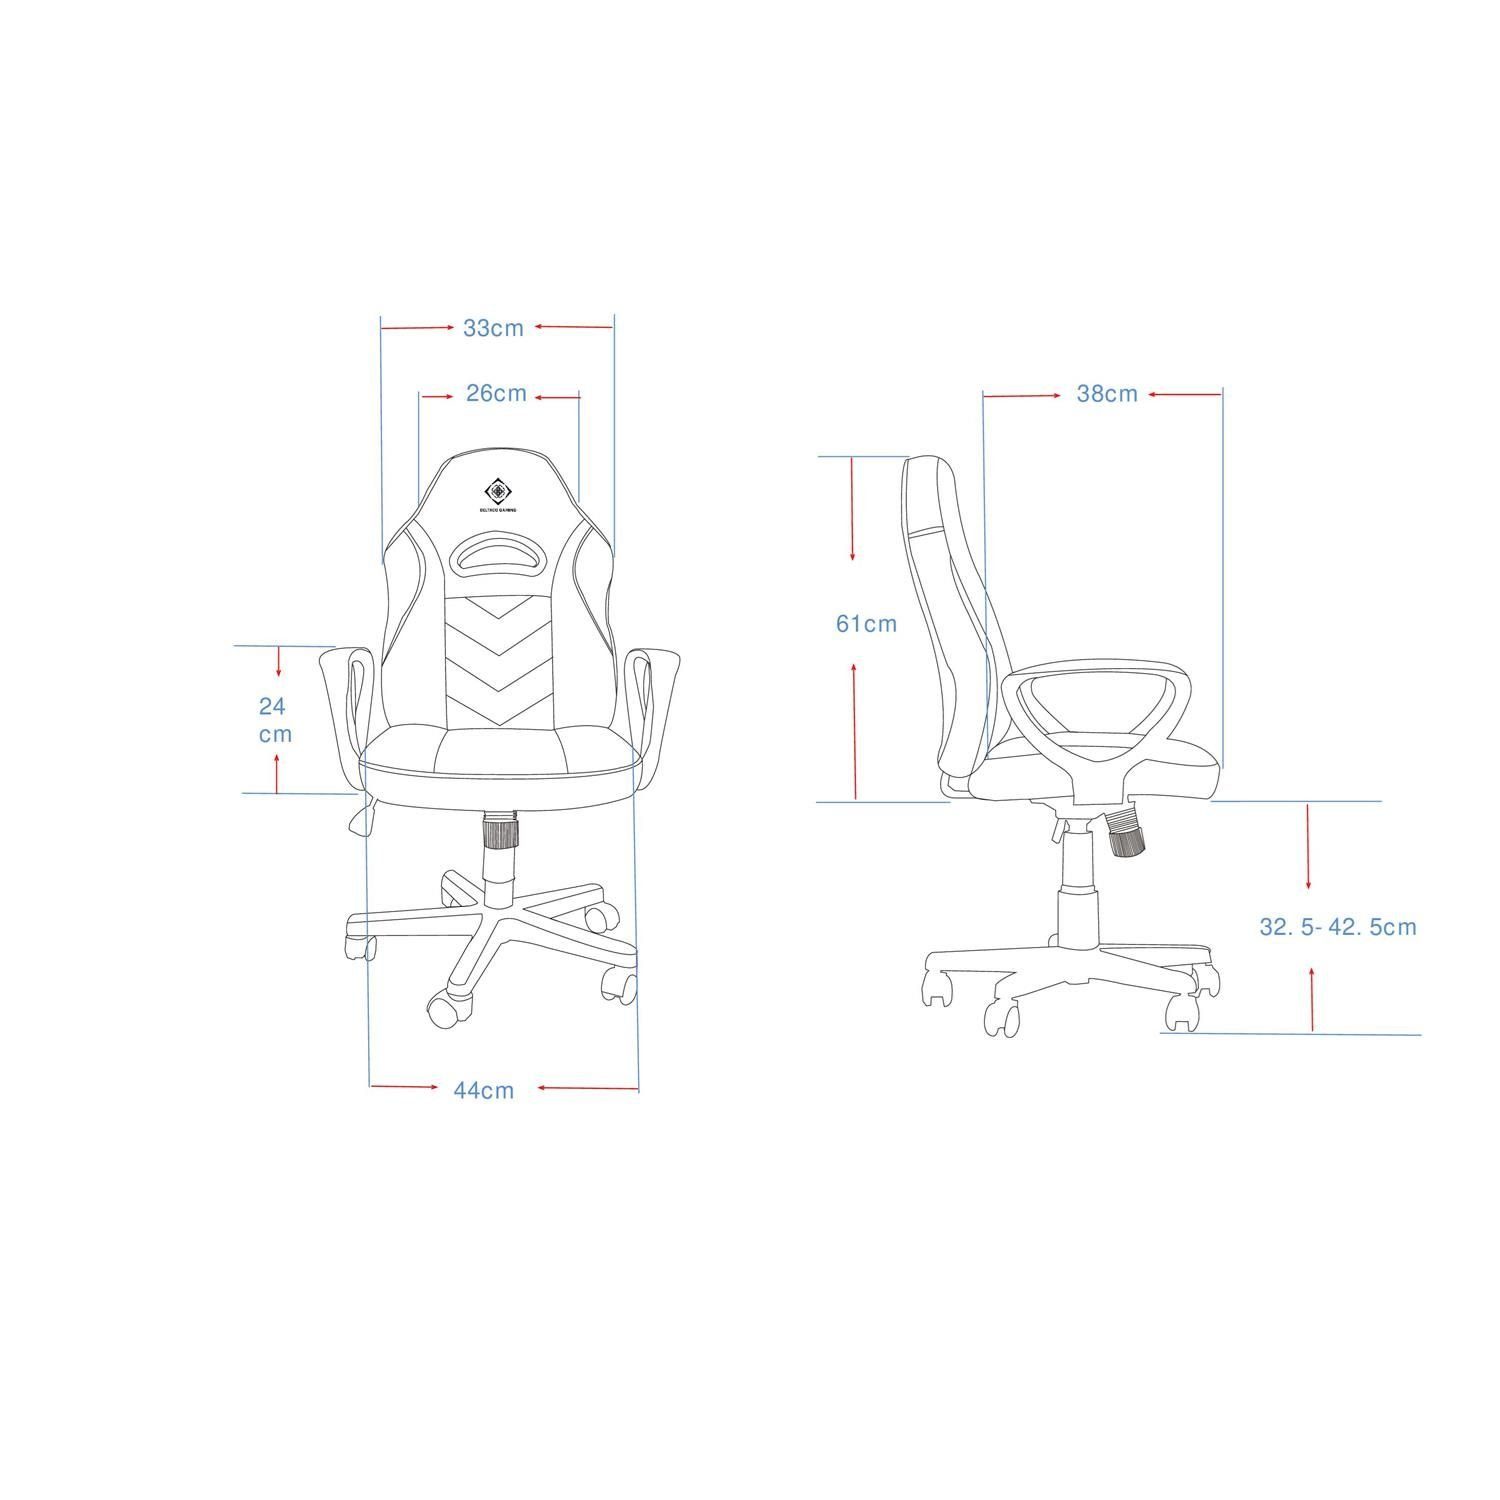 Stuhl klein bequem Herstellergarantie inkl. extra Gaming-Stuhl Set), schwarz nach langem DC110 (kein 5 Sitzen DELTACO Jahre selbst Gaming